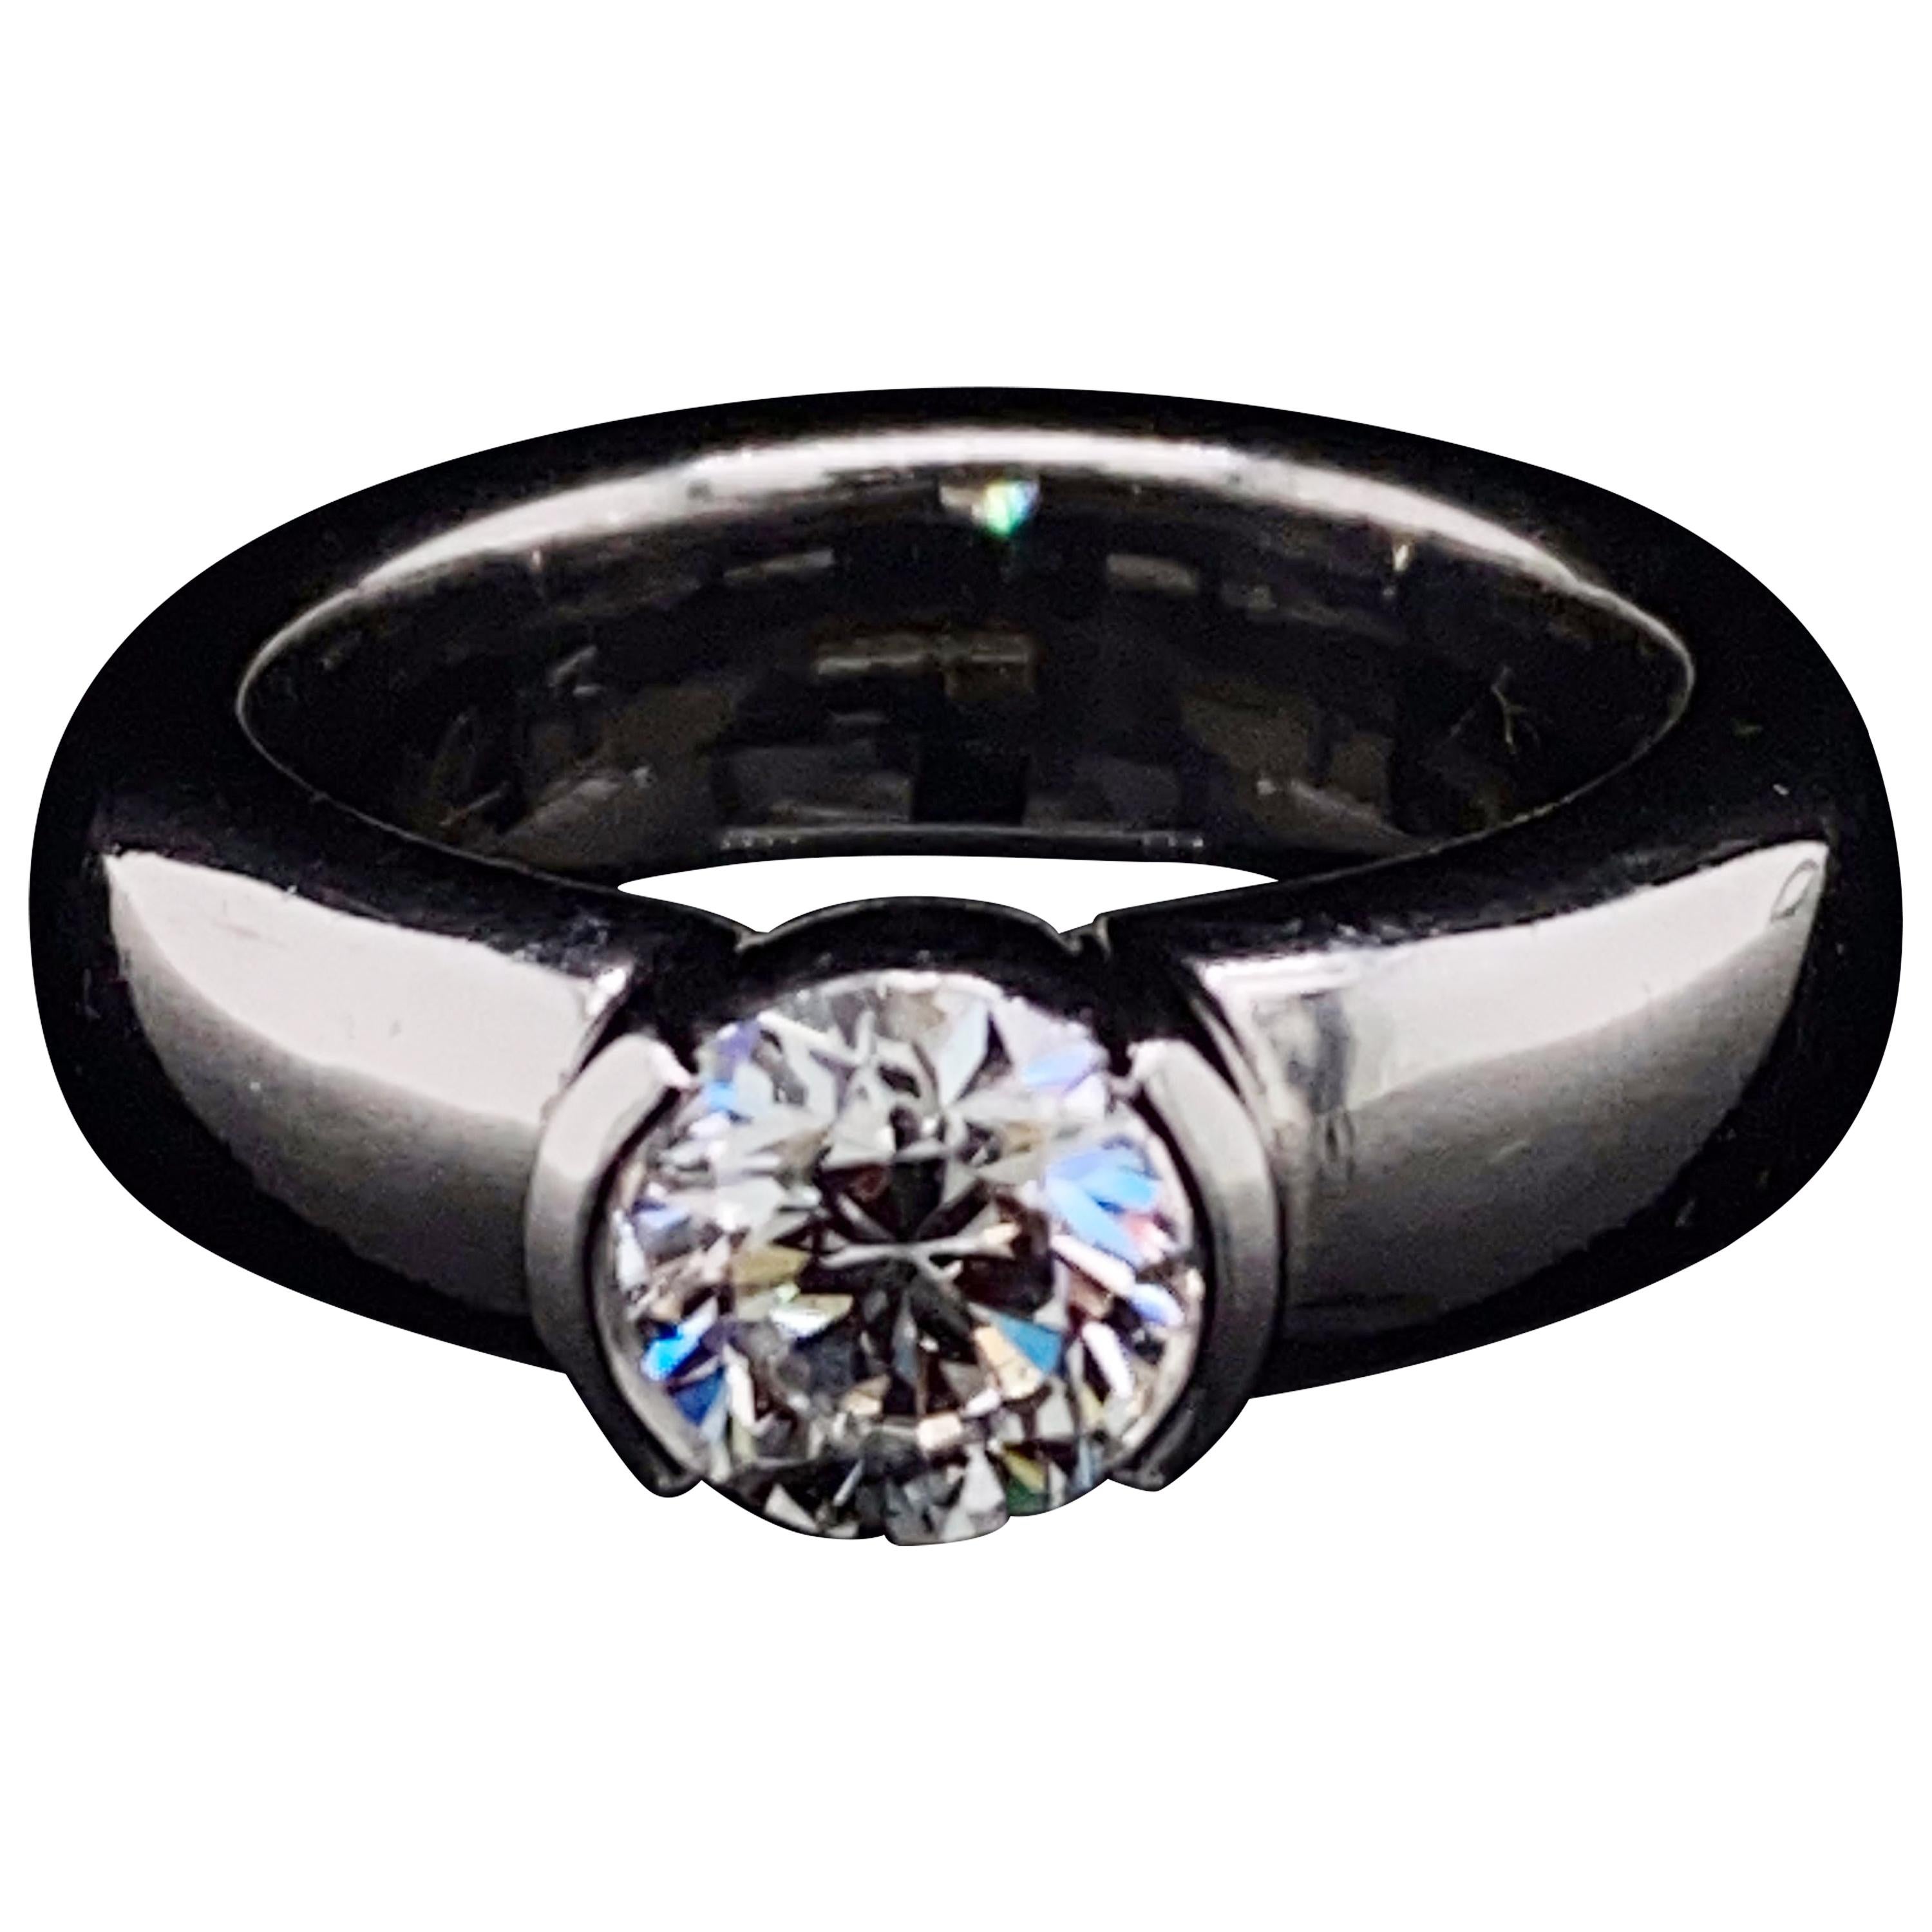 Tiffany & Co. Etoile Diamond Engagement Ring Platinum